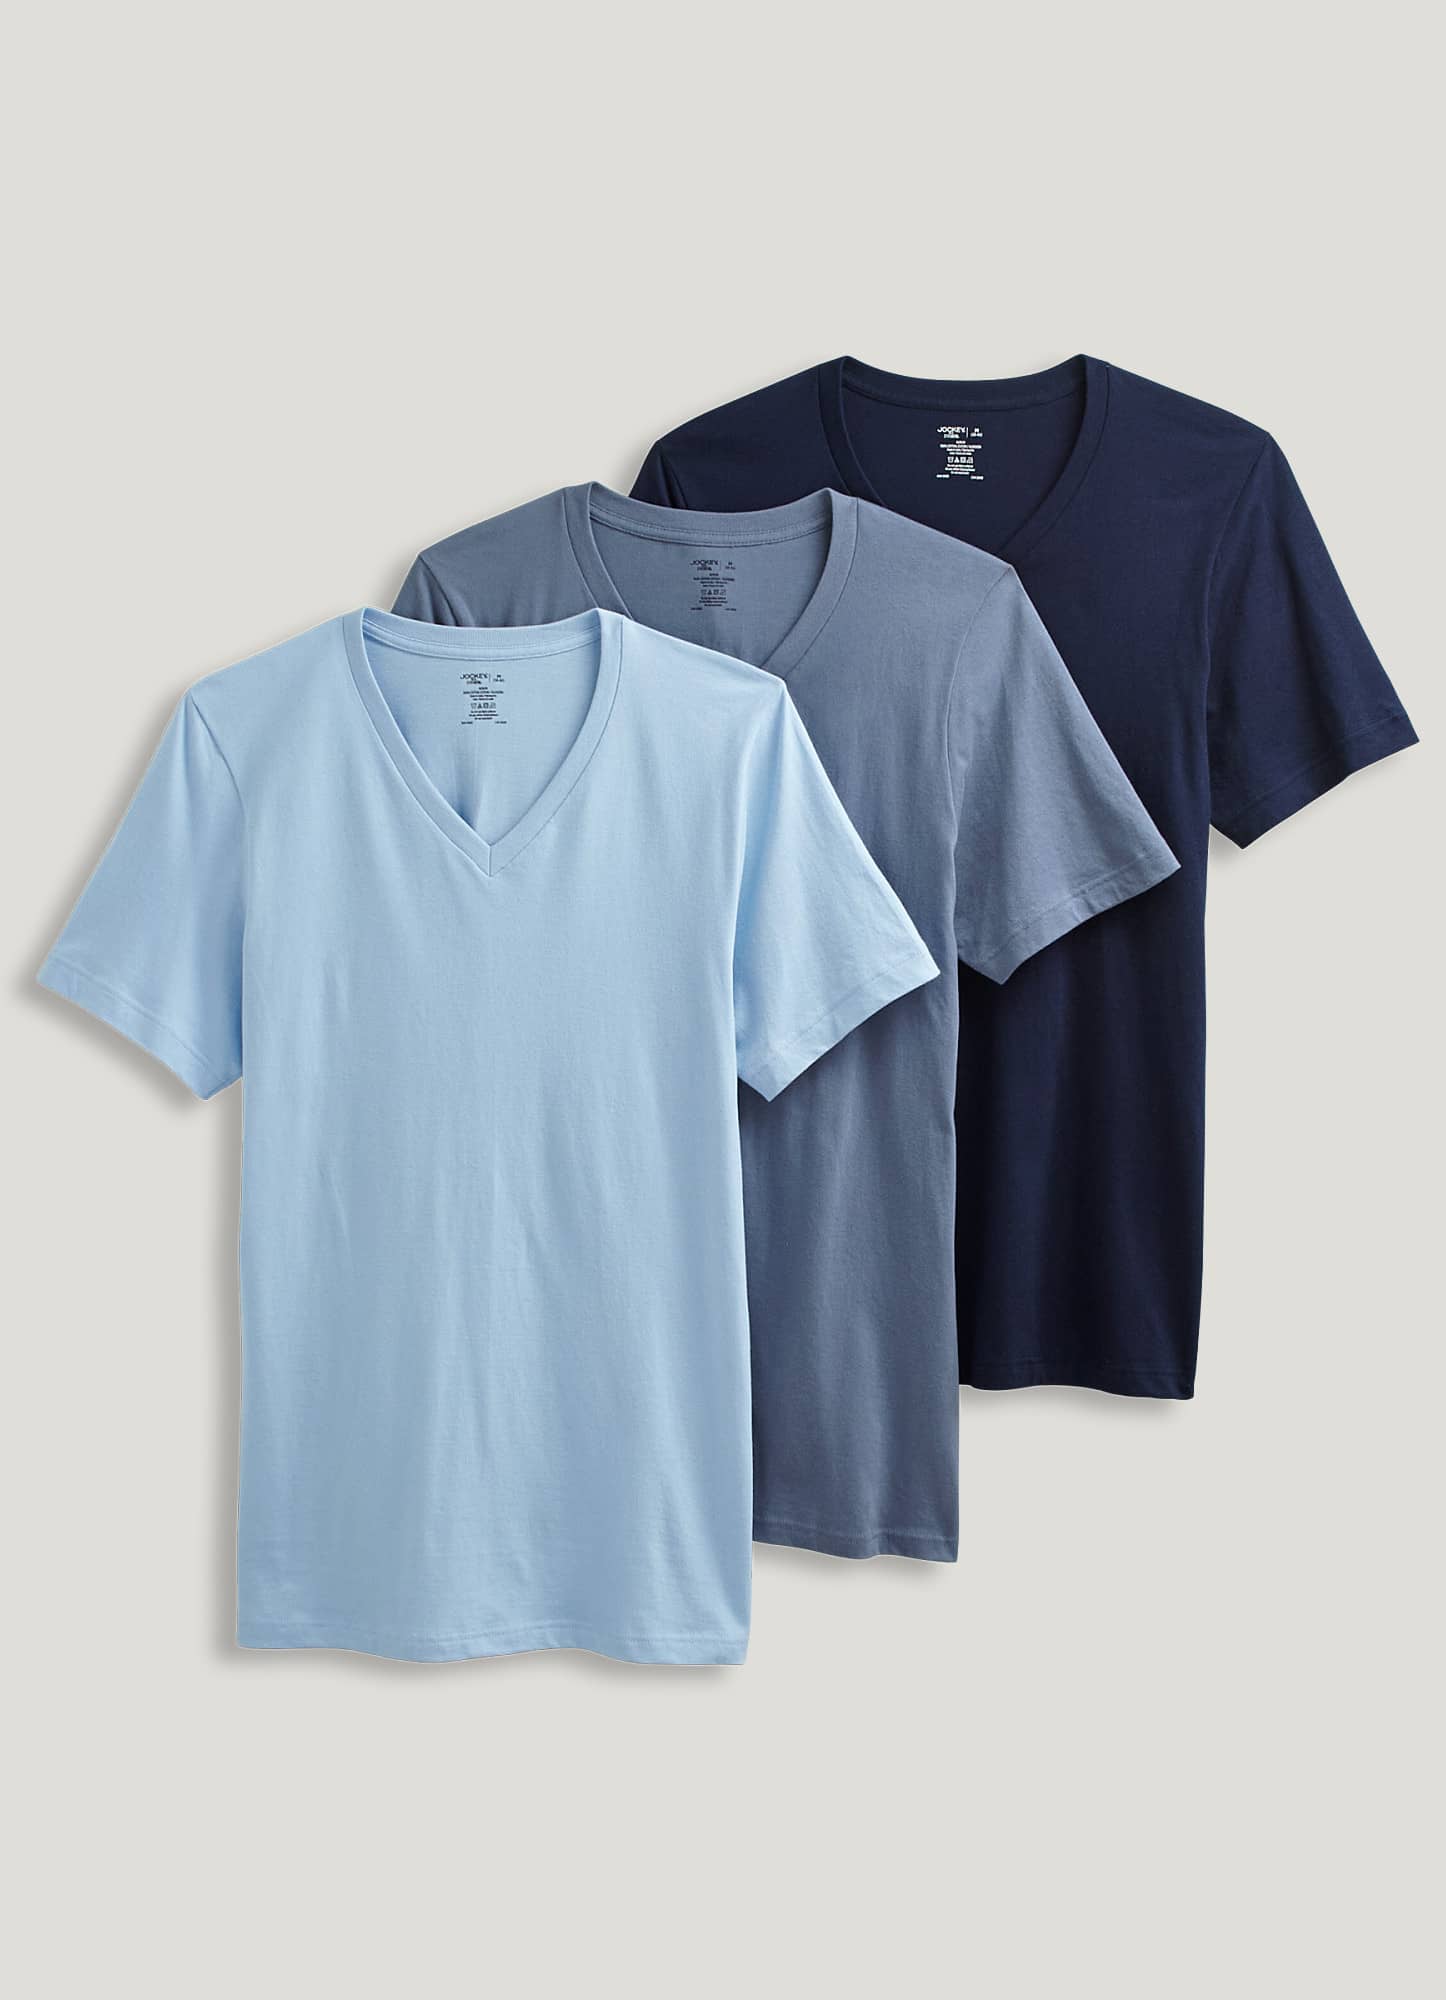 Calvin Klein Long Sleeve Rib V-neck T-shirt (white) Men's Clothing in Gray  for Men